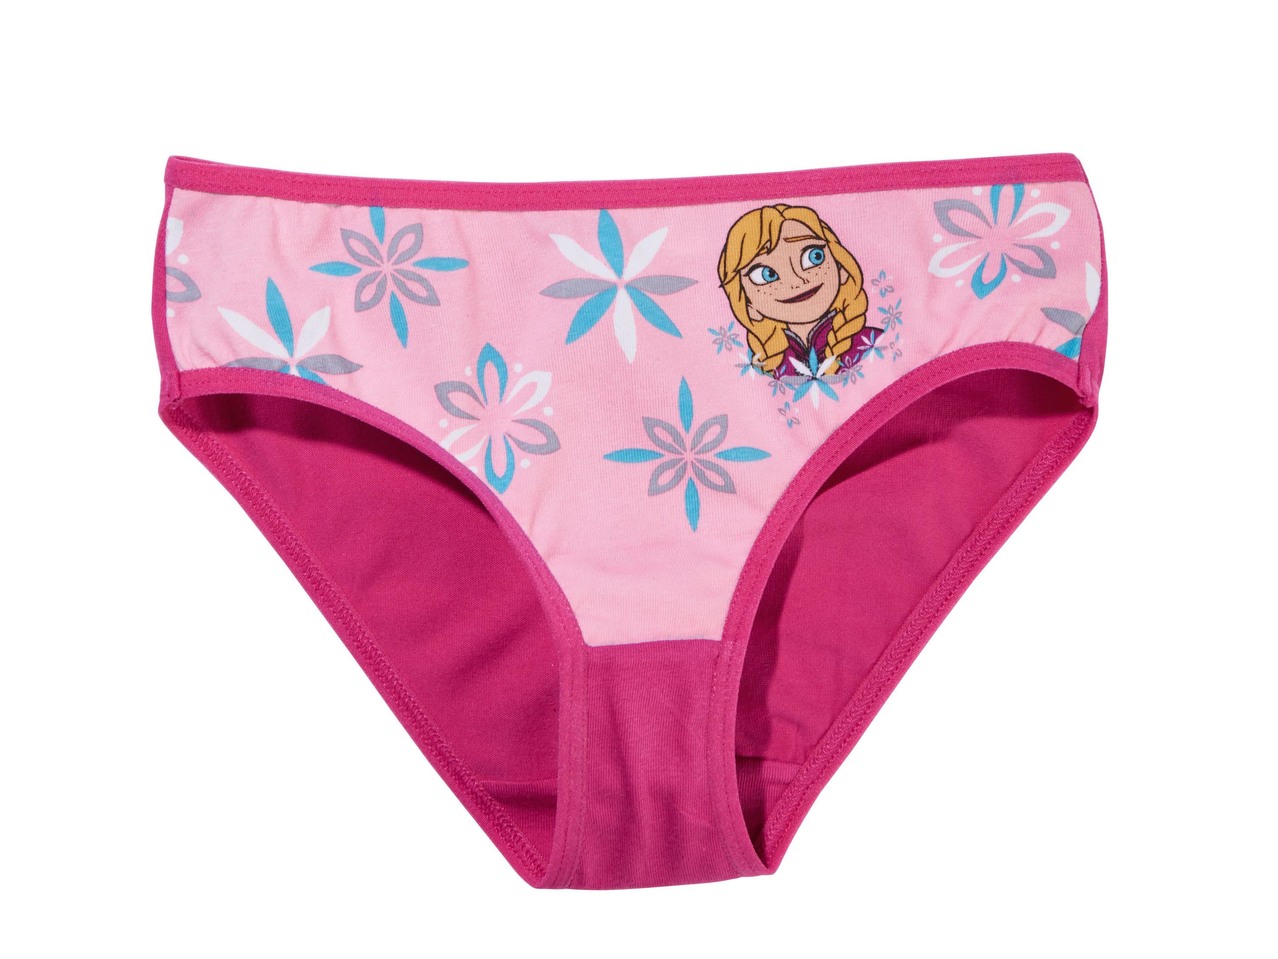 Girls' Underwear Set "Frozen, Minnie"